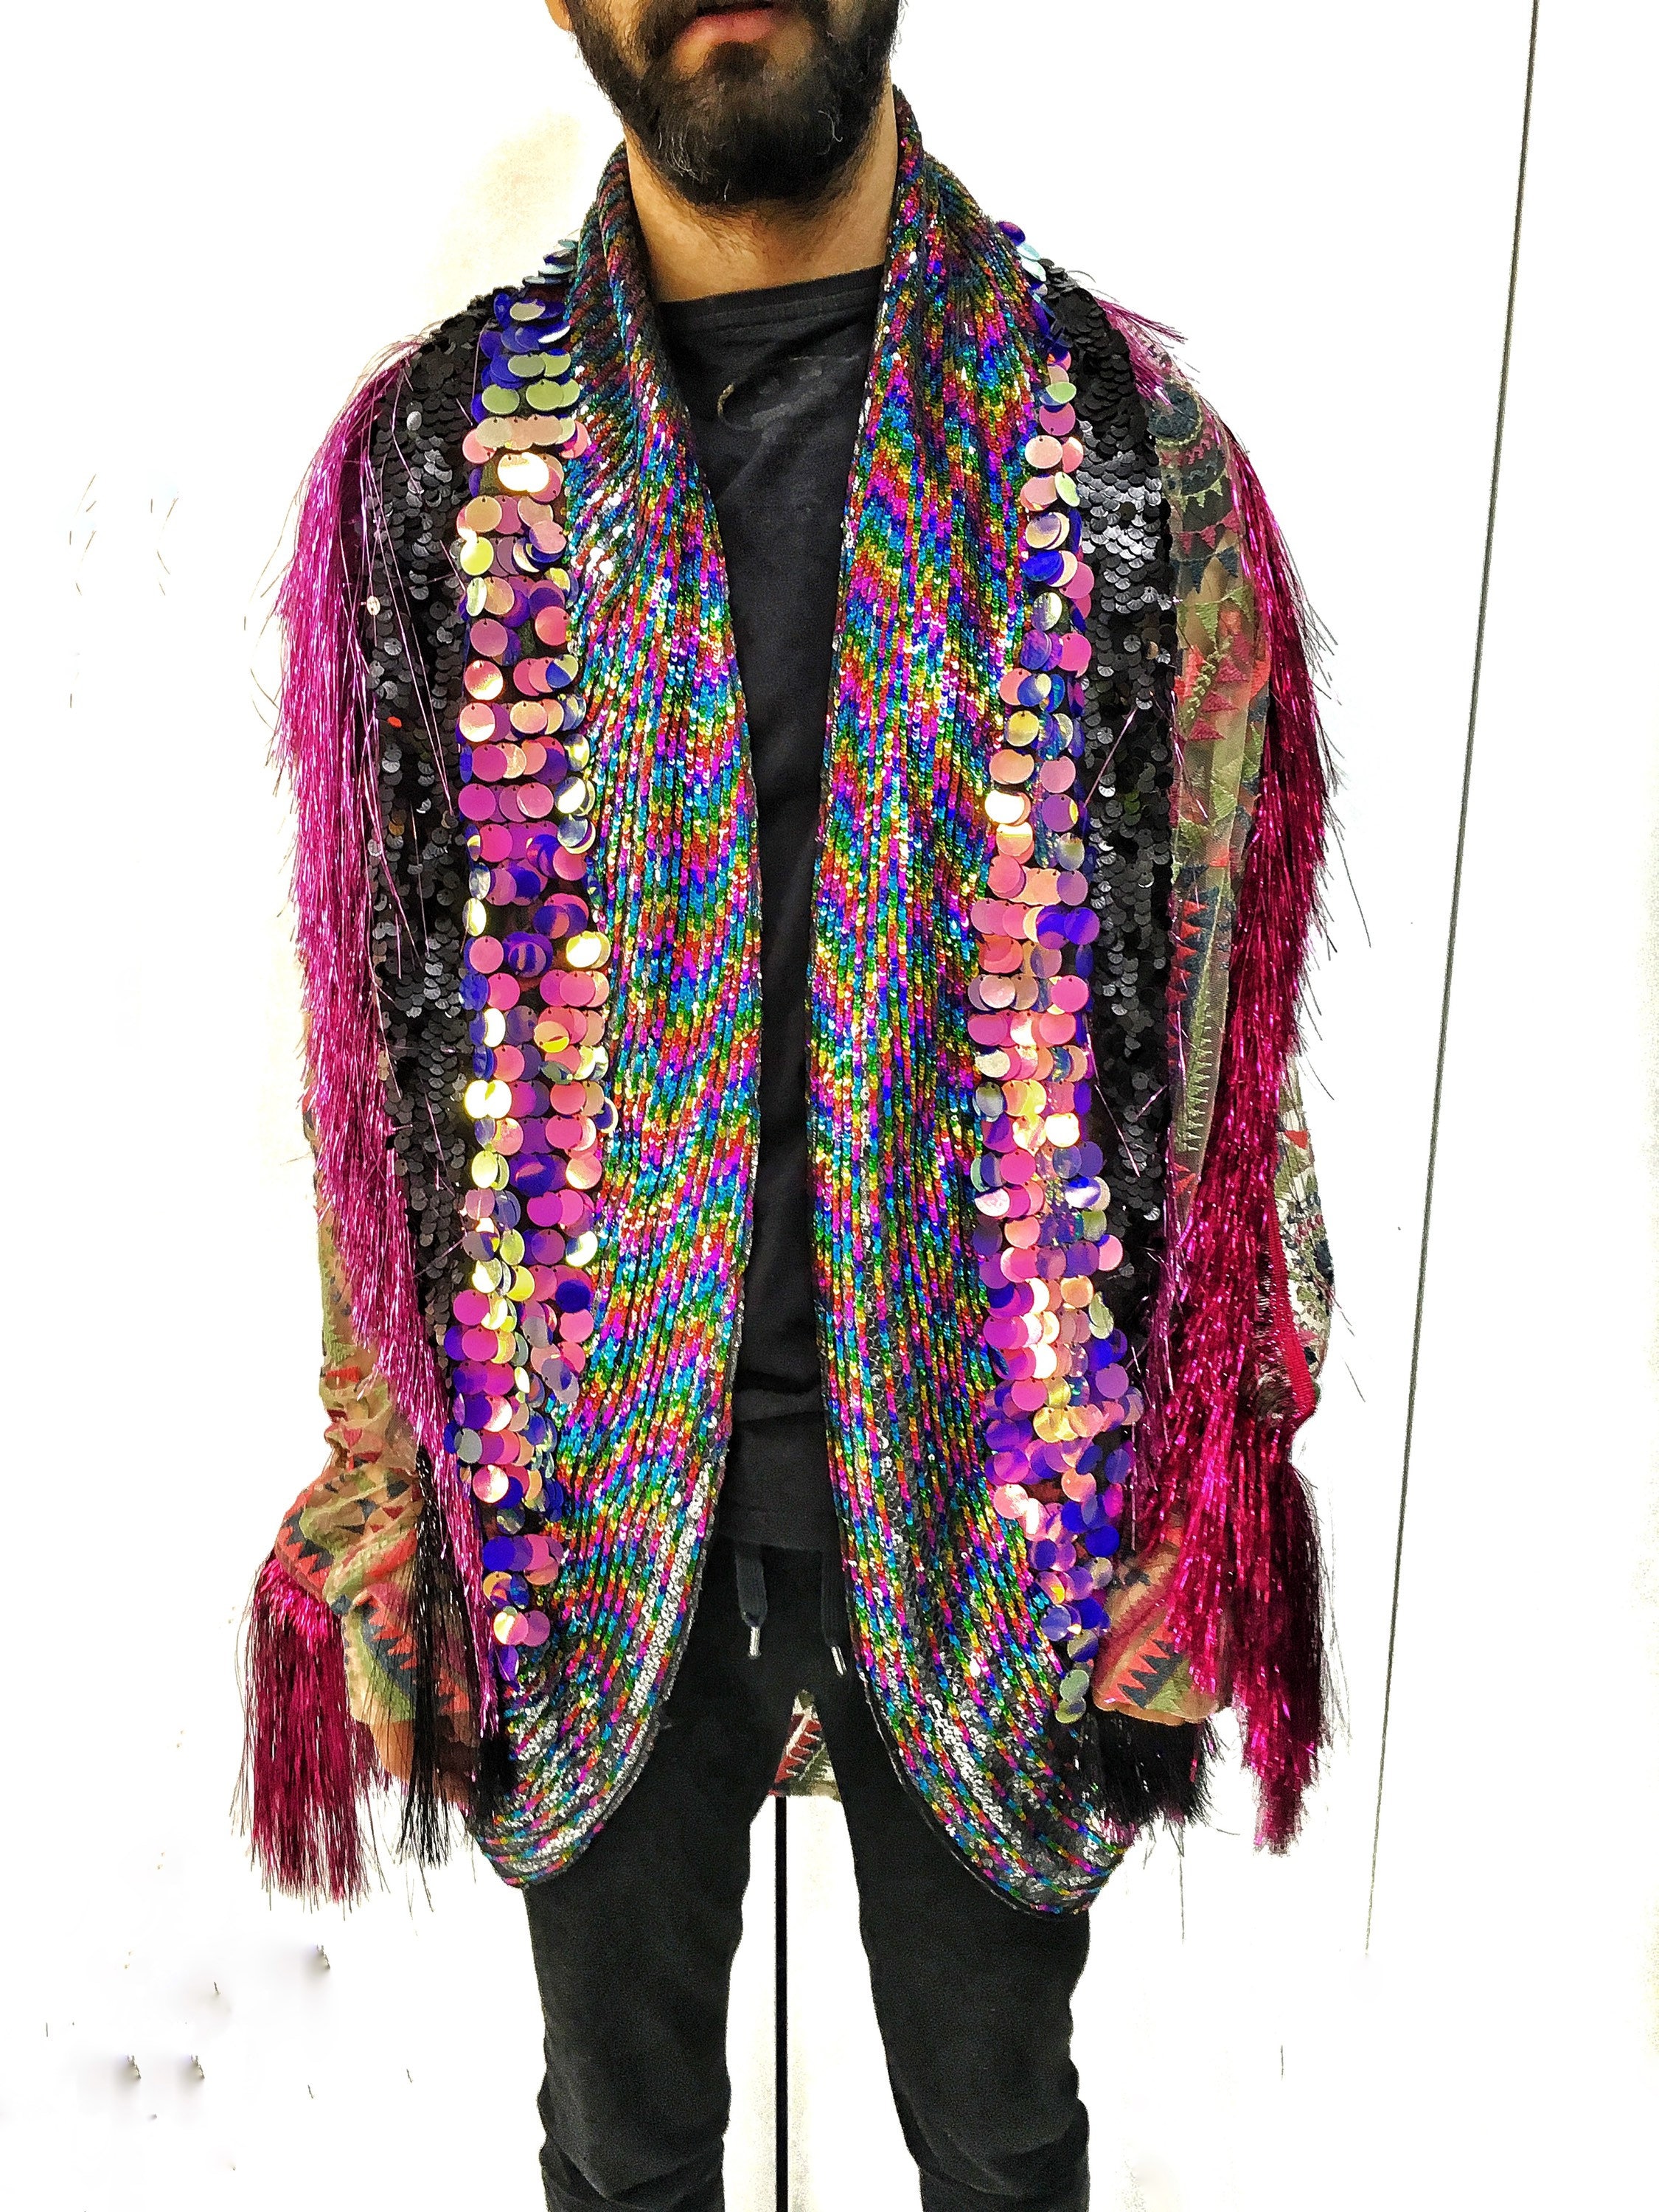 Tulum Tinsel Fringe Kimono Burningman jacket Rave outfit | Etsy